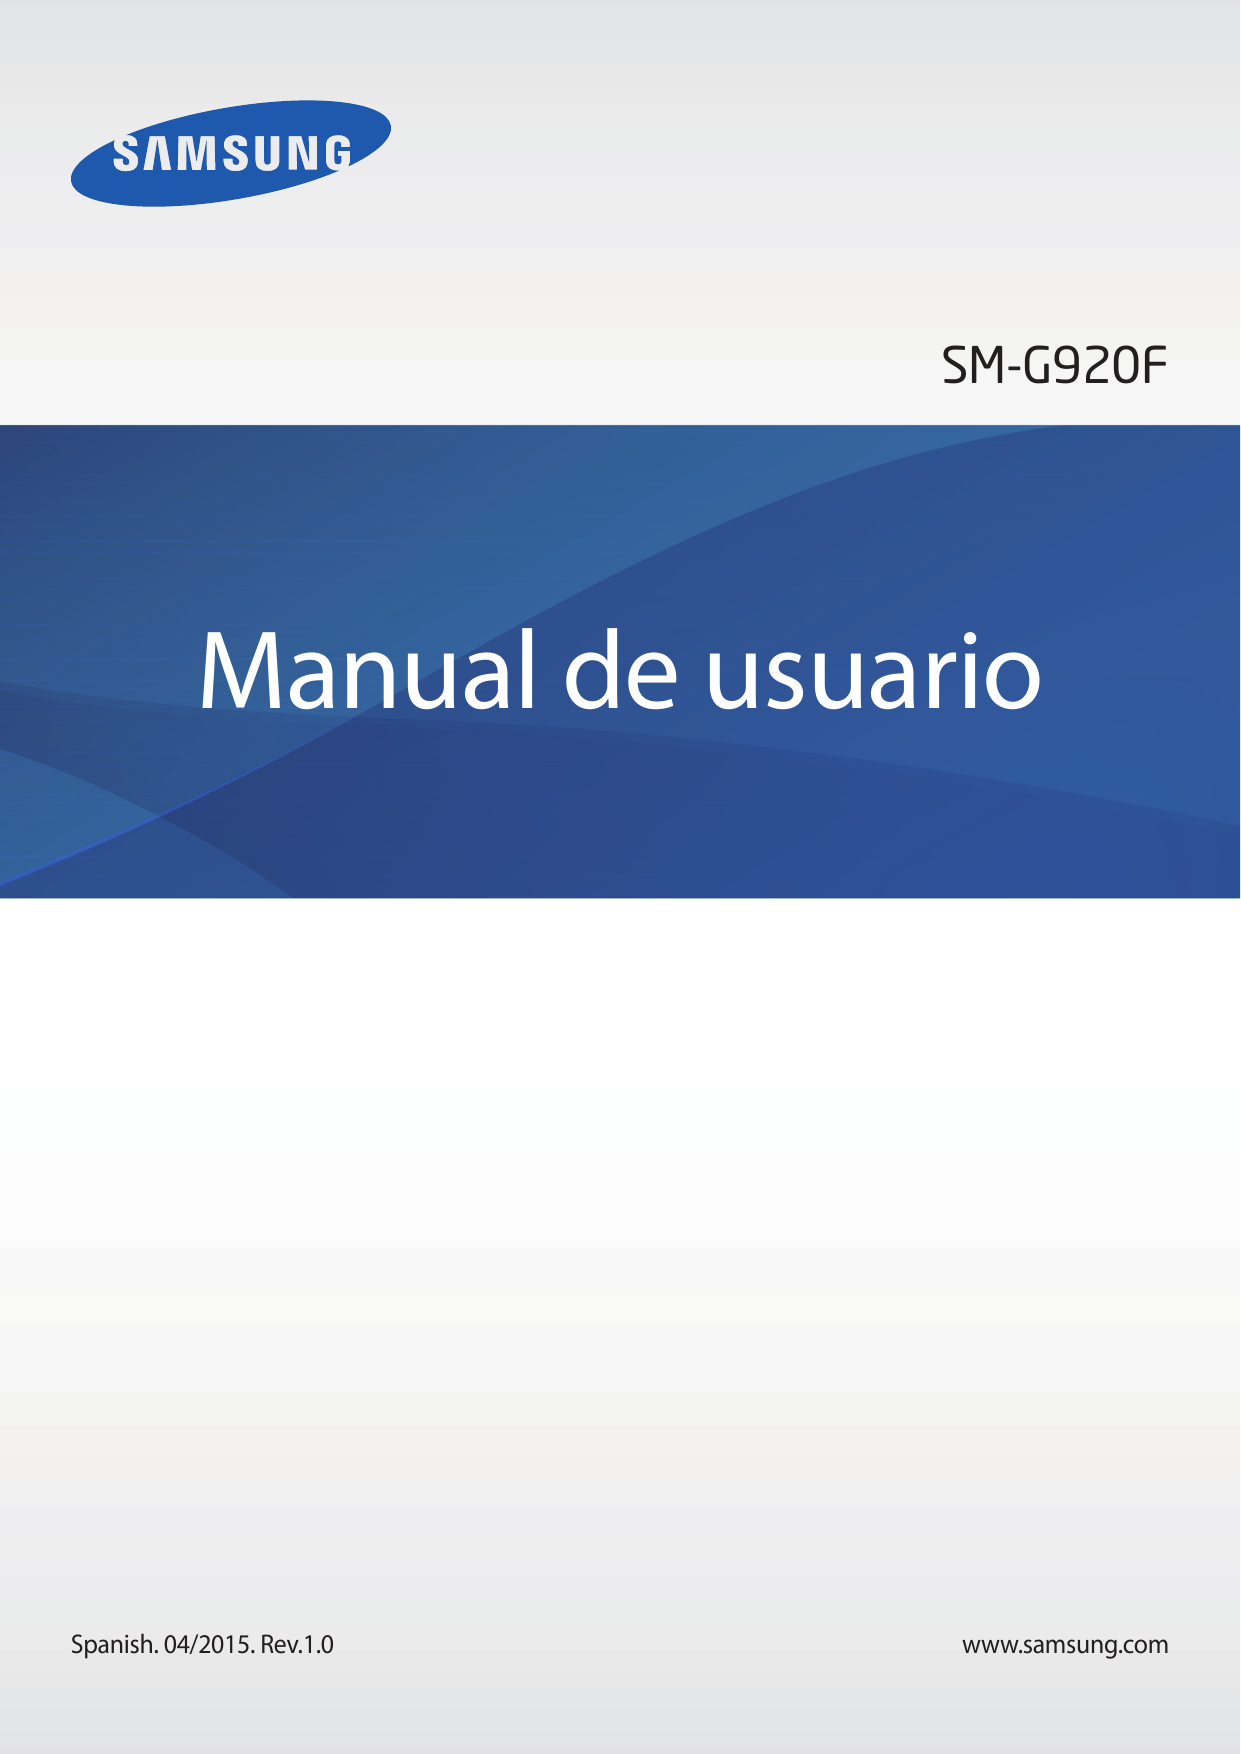 SM-G920FManual de usuarioSpanish. 04/2015. Rev.1.0www.samsung.com